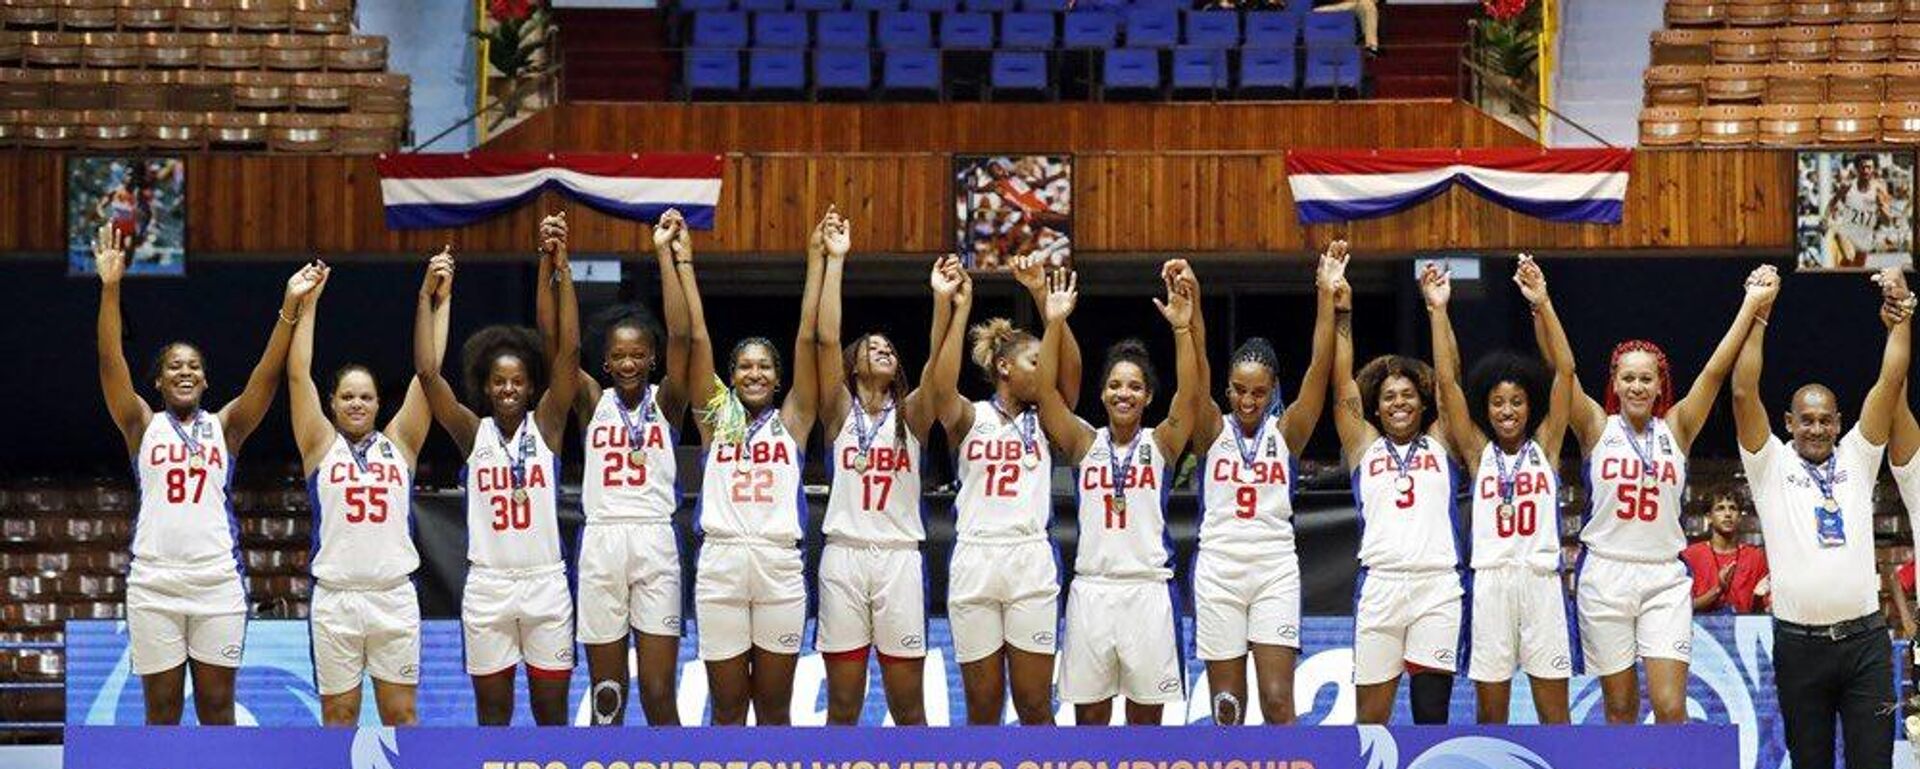 El equipo femenino de baloncesto de Cuba se corona campeón en el CBC Women's Championship 2022 - Sputnik Mundo, 1920, 18.07.2022